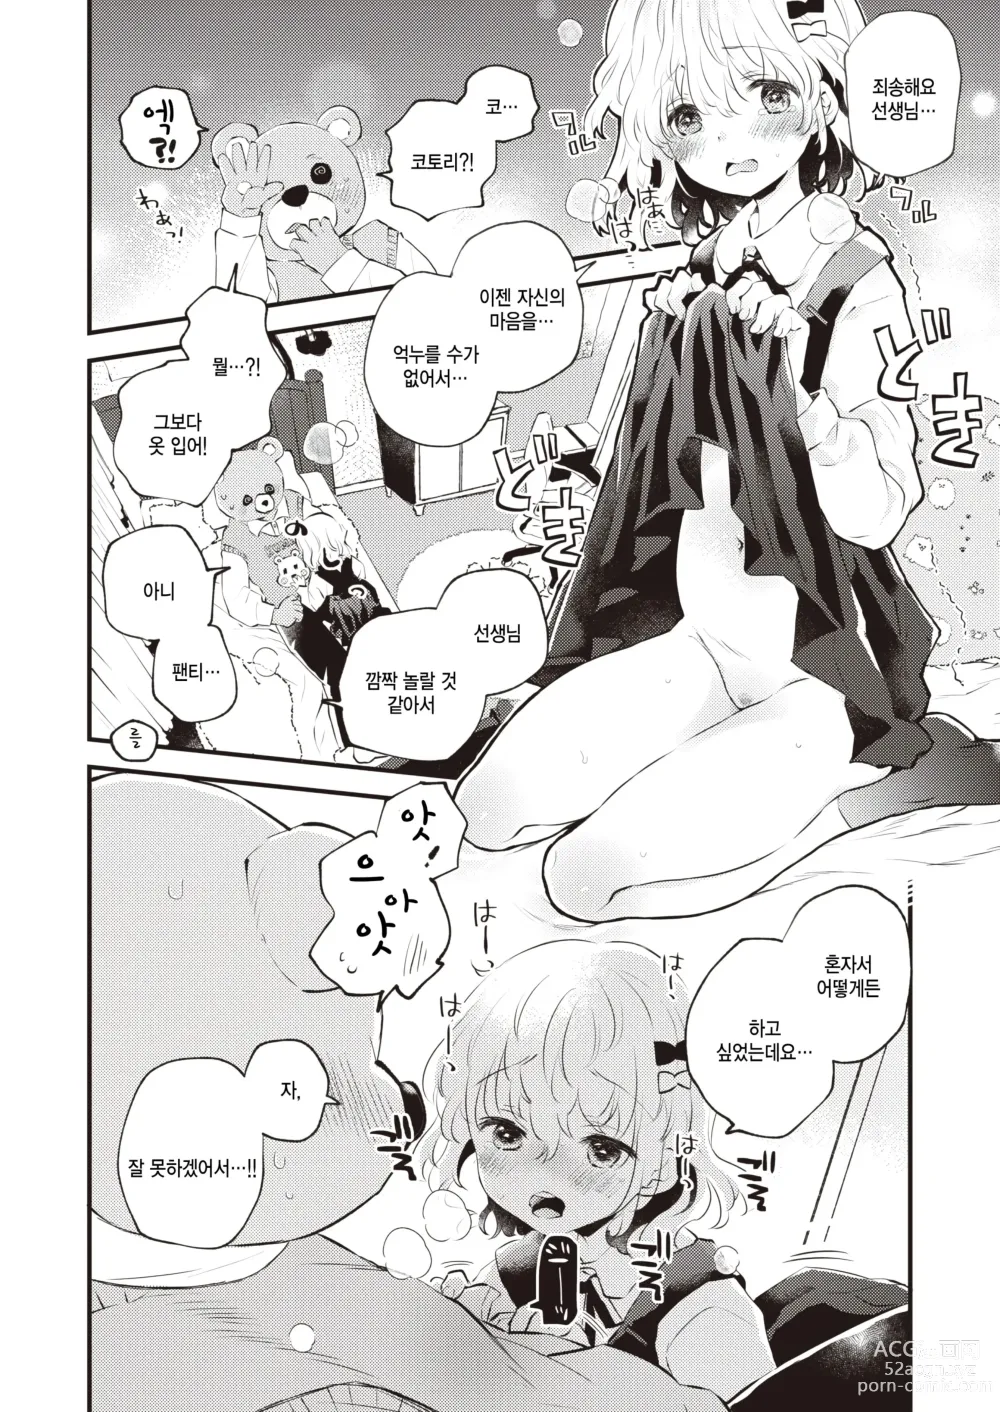 Page 6 of manga Kedamono Michi